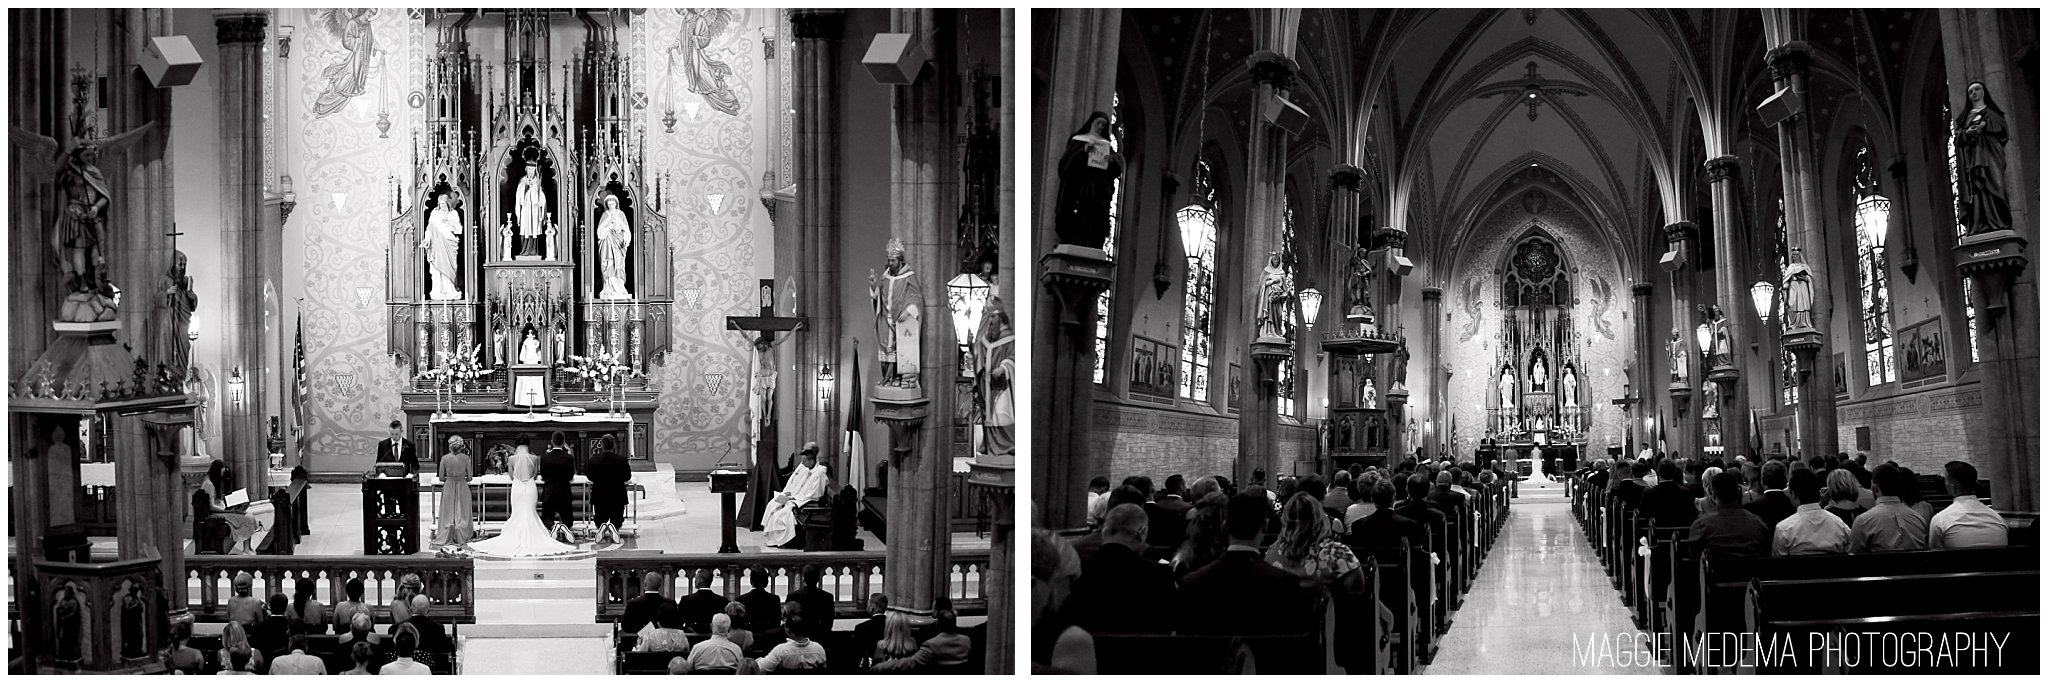 St. Louis Church Wedding